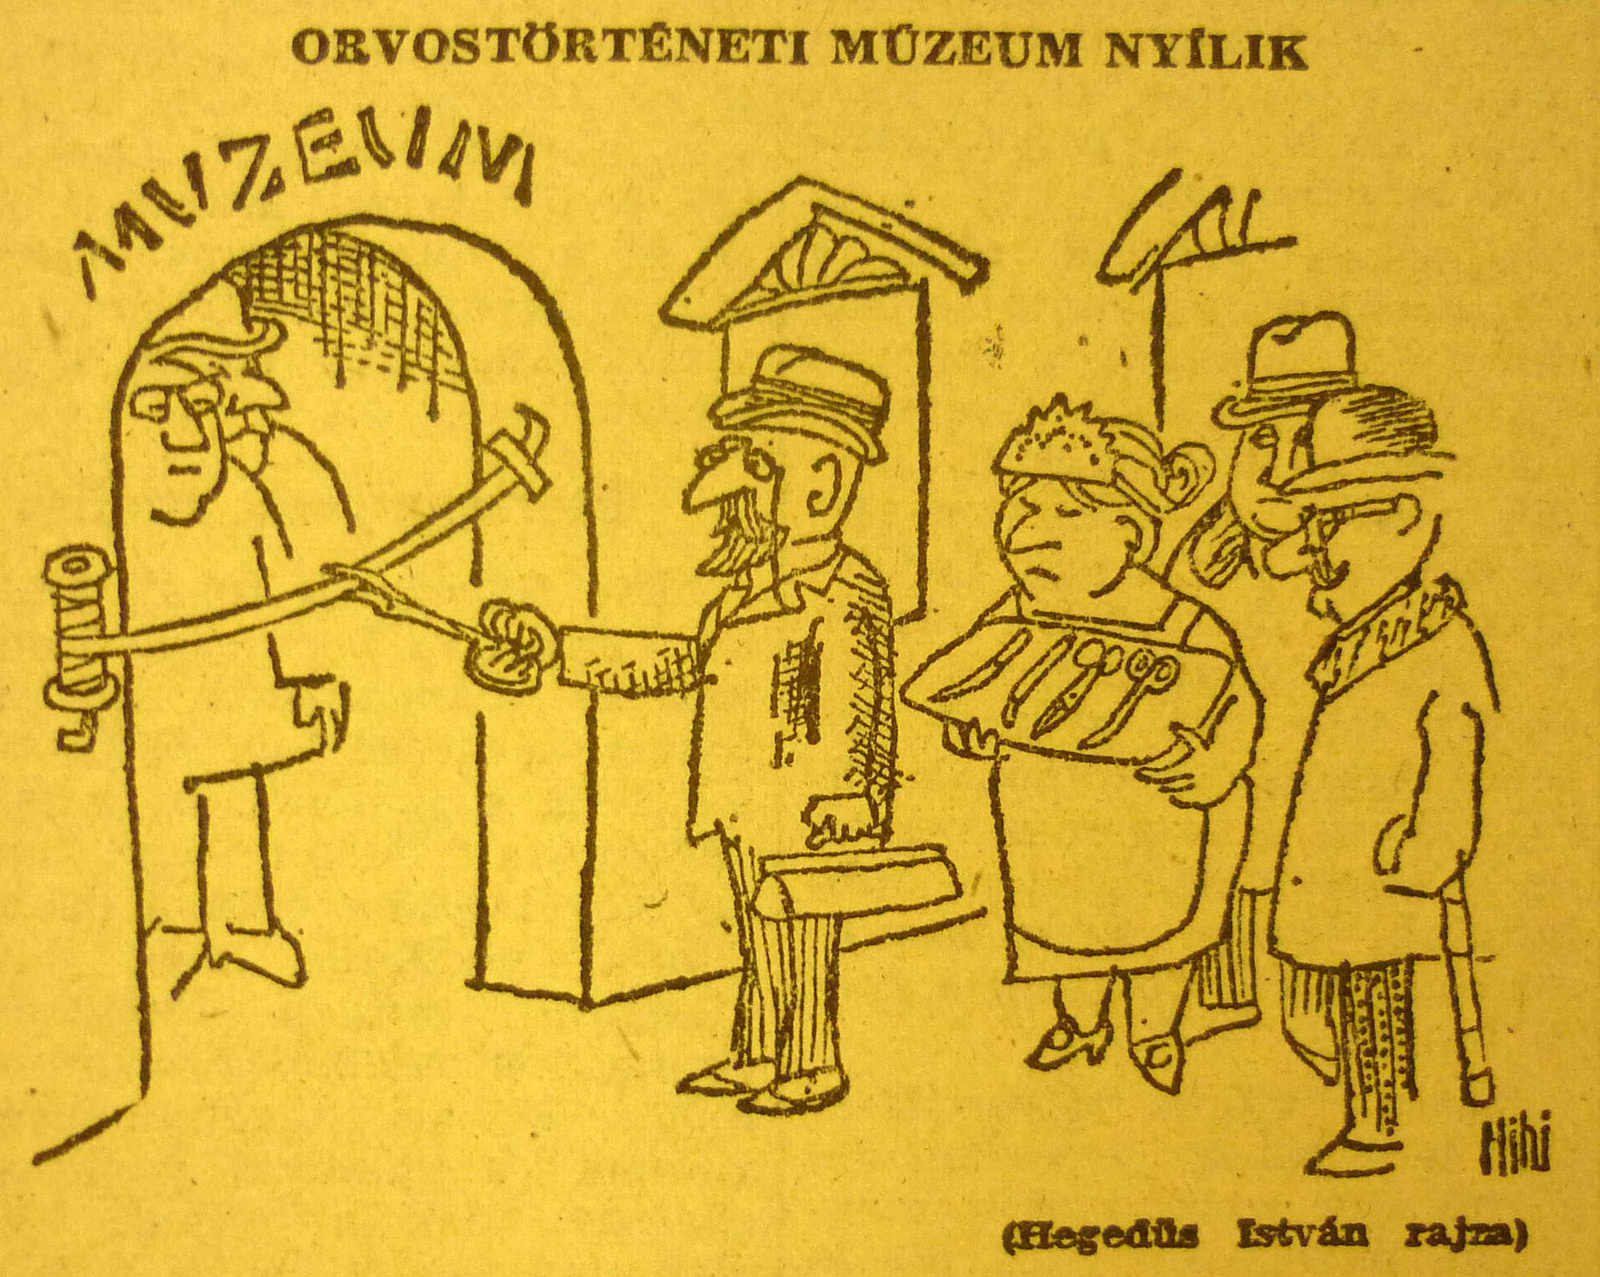 OrvostortenetiMuzeum-196501-MagyarNemzetKarikatura.jpg